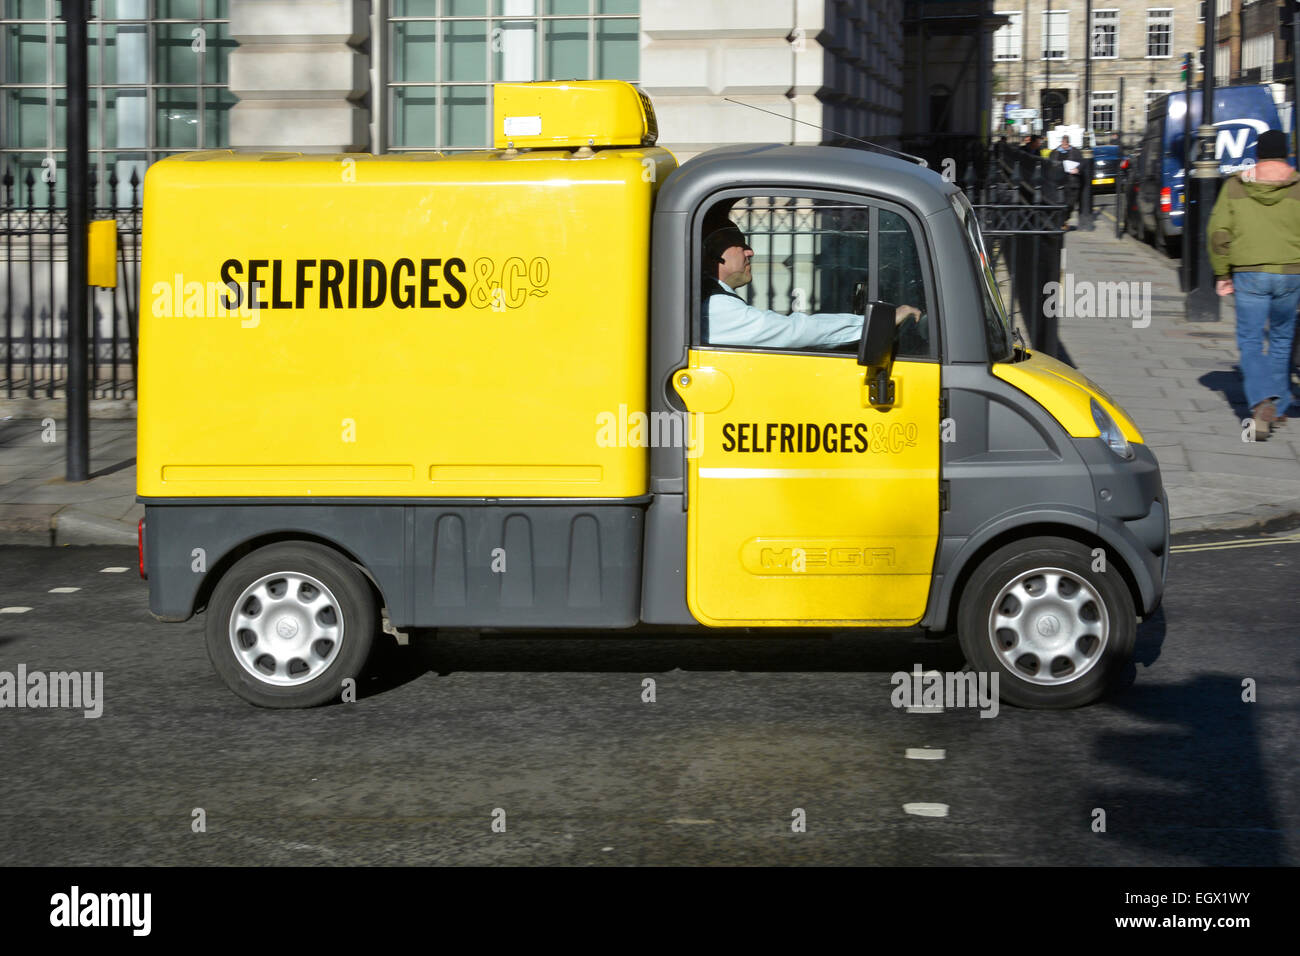 Scène de rue Selfridges gros plan petite fourgonnette jaune Aixam Mega et pilote jour ensoleillé dans West End Londres Angleterre Royaume-Uni Banque D'Images